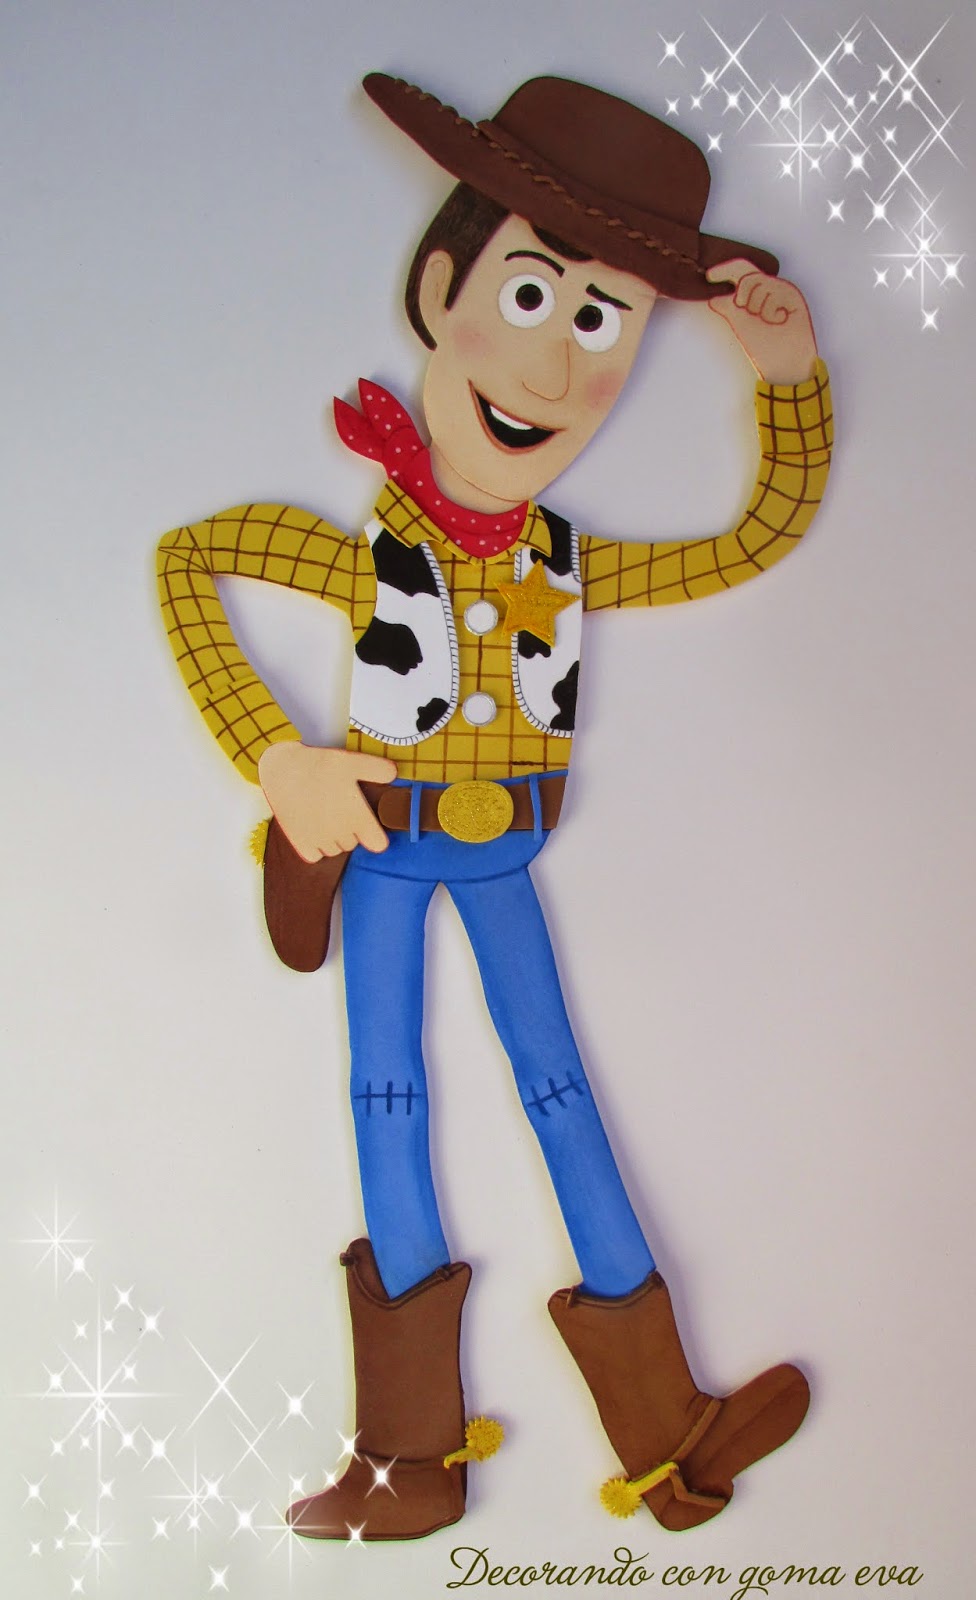 Afectar Superioridad Shetland Decorando con goma eva: Woody de Toy Story en goma eva